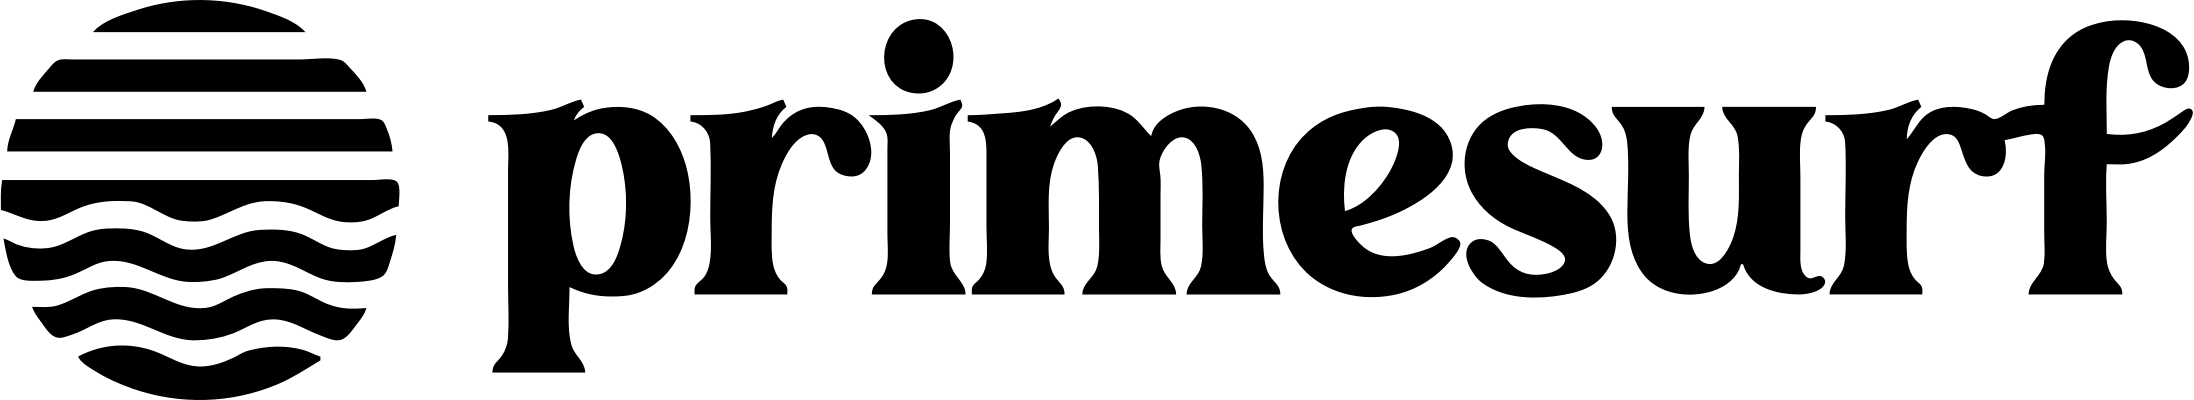 logo primesurf black icon